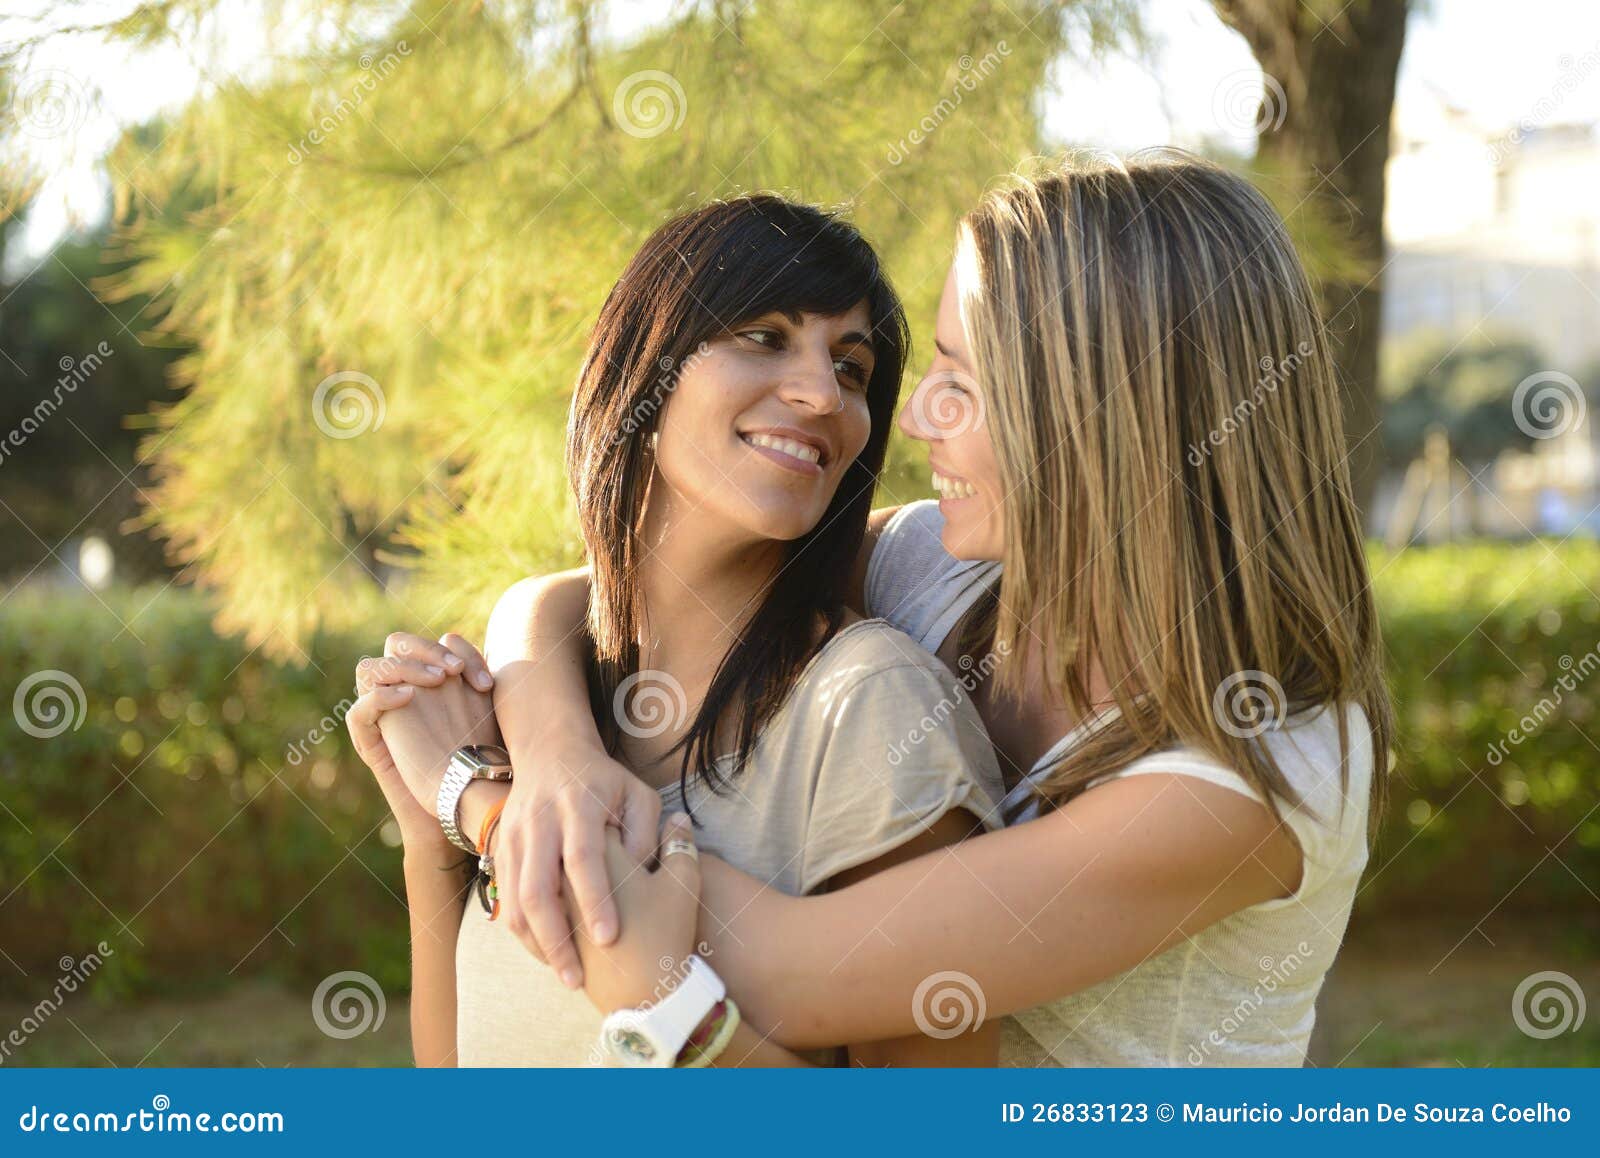 在家放松在客厅的两个女同性恋 库存图片. 图片 包括有 幸福, 成人, 友谊, 关系, 女性, 户内, 女同性恋者 - 212817623